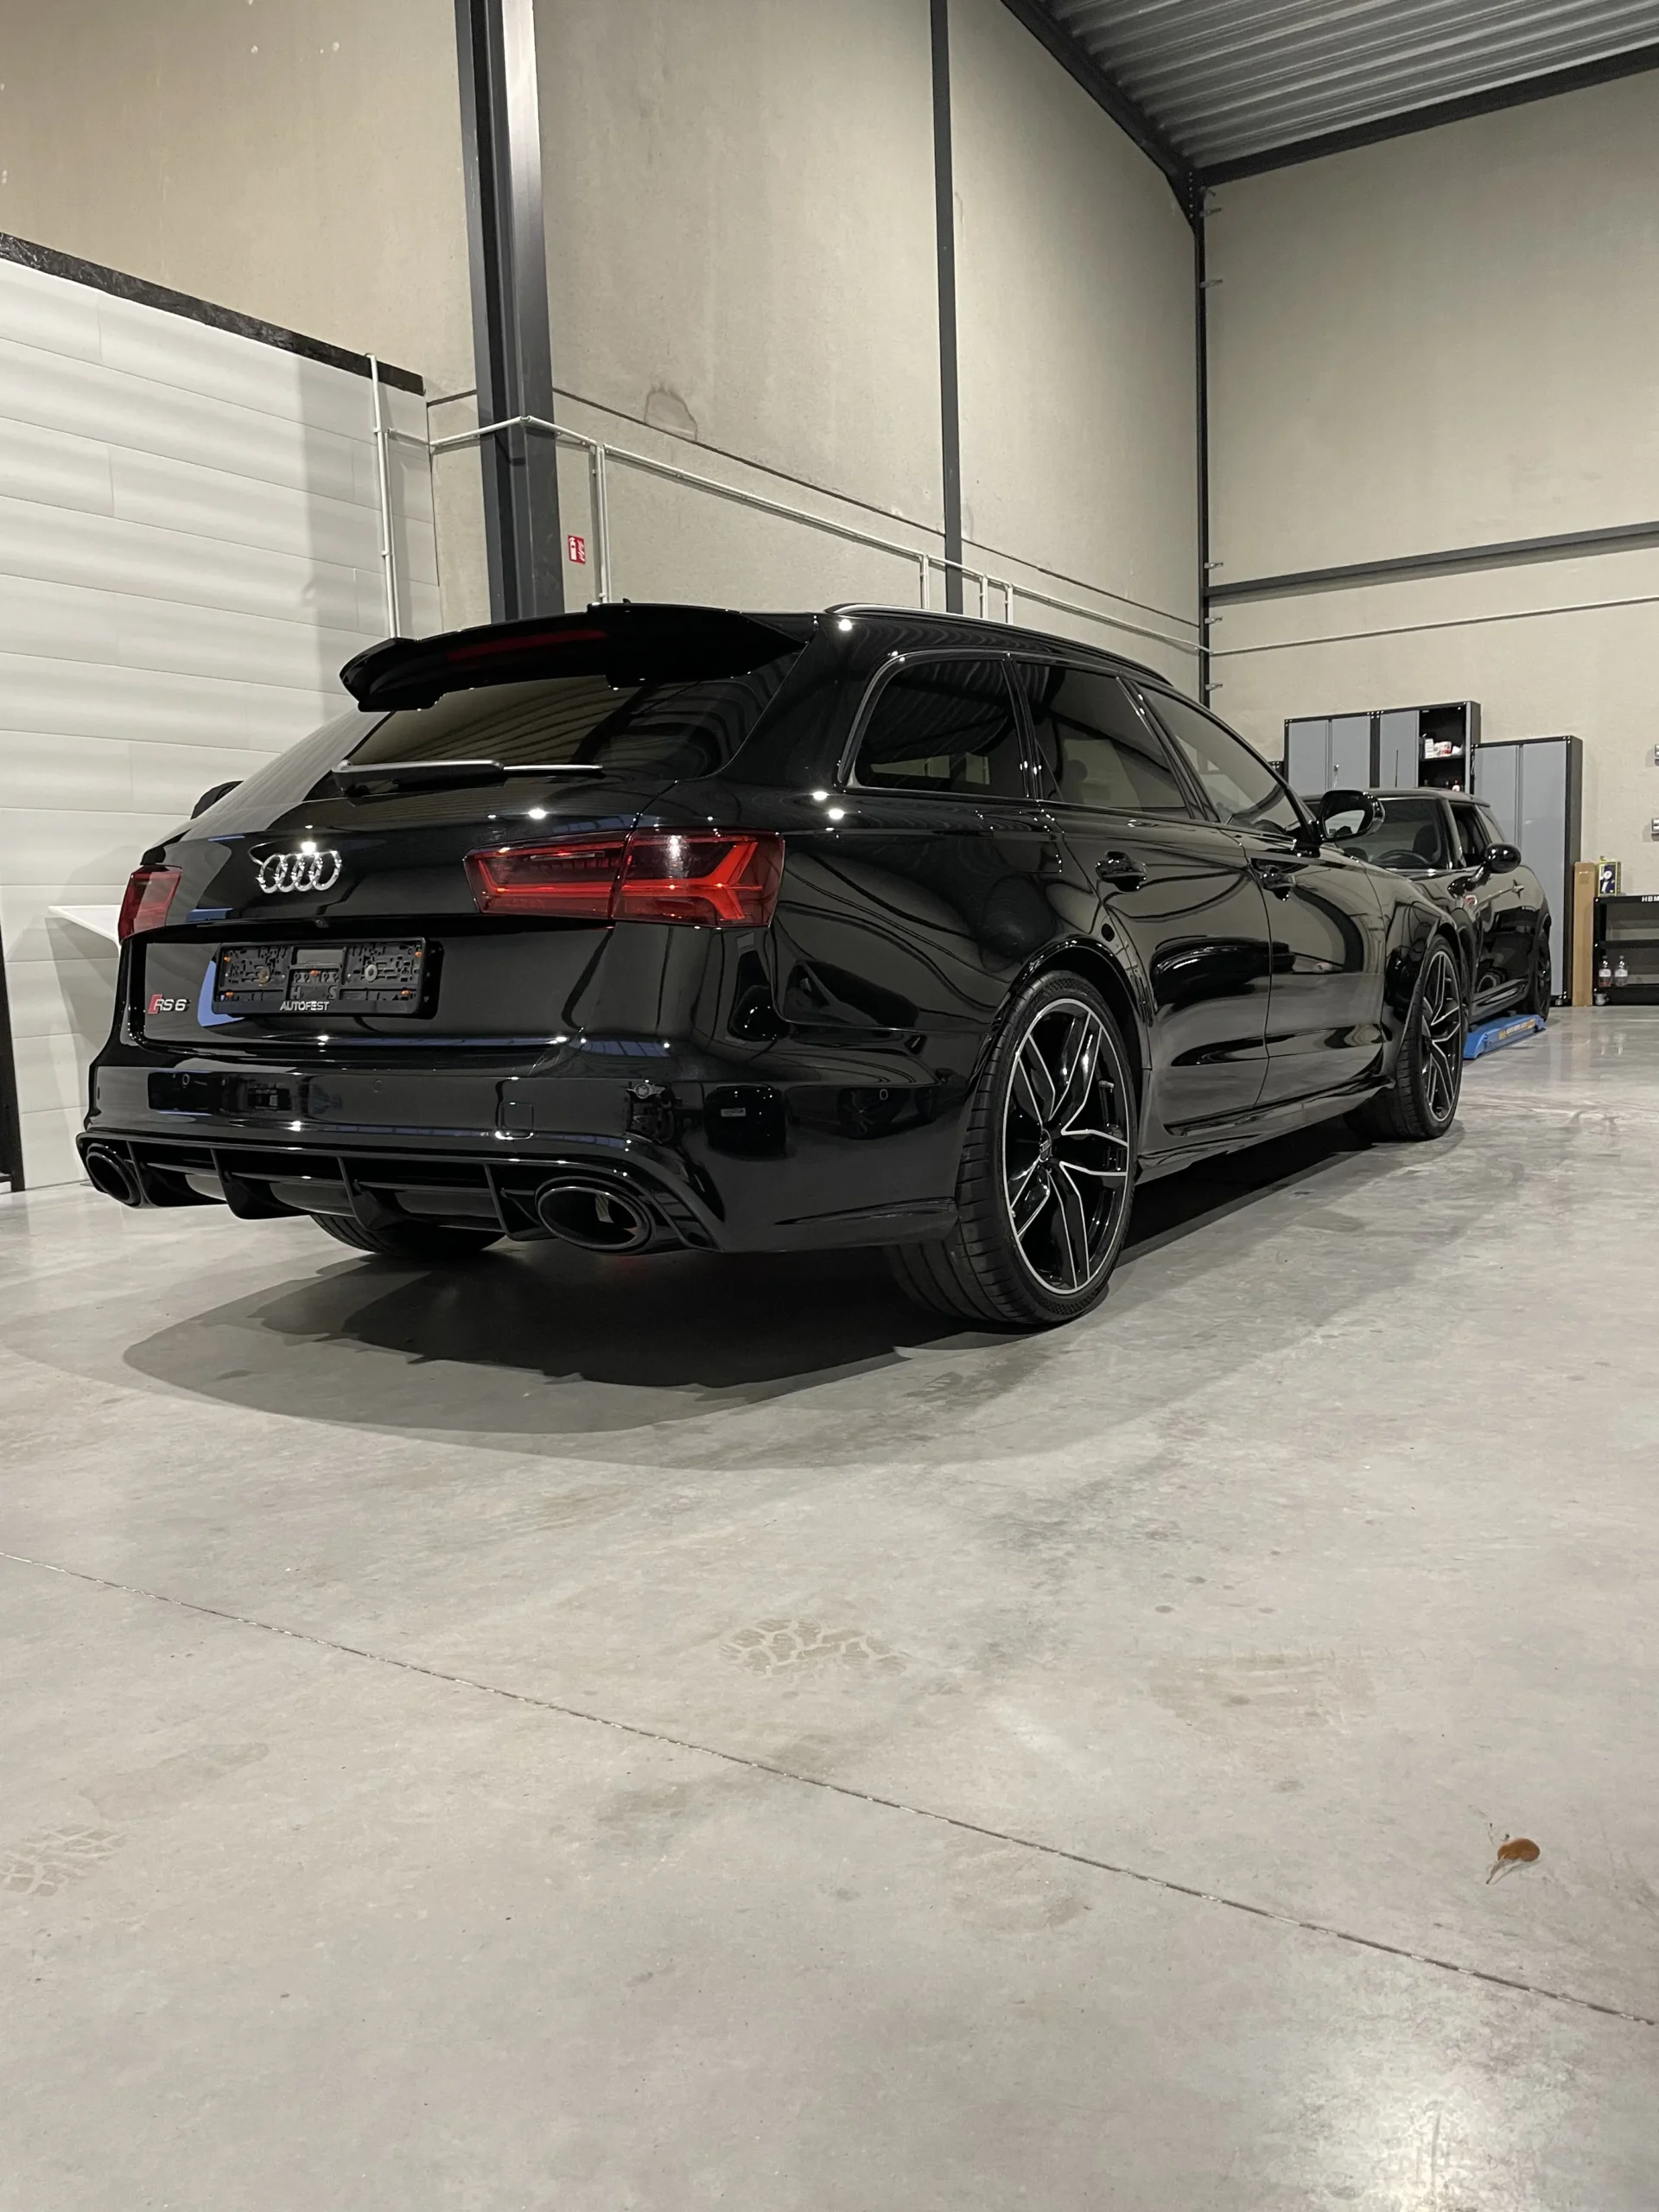 SB Cardetailing - Audi